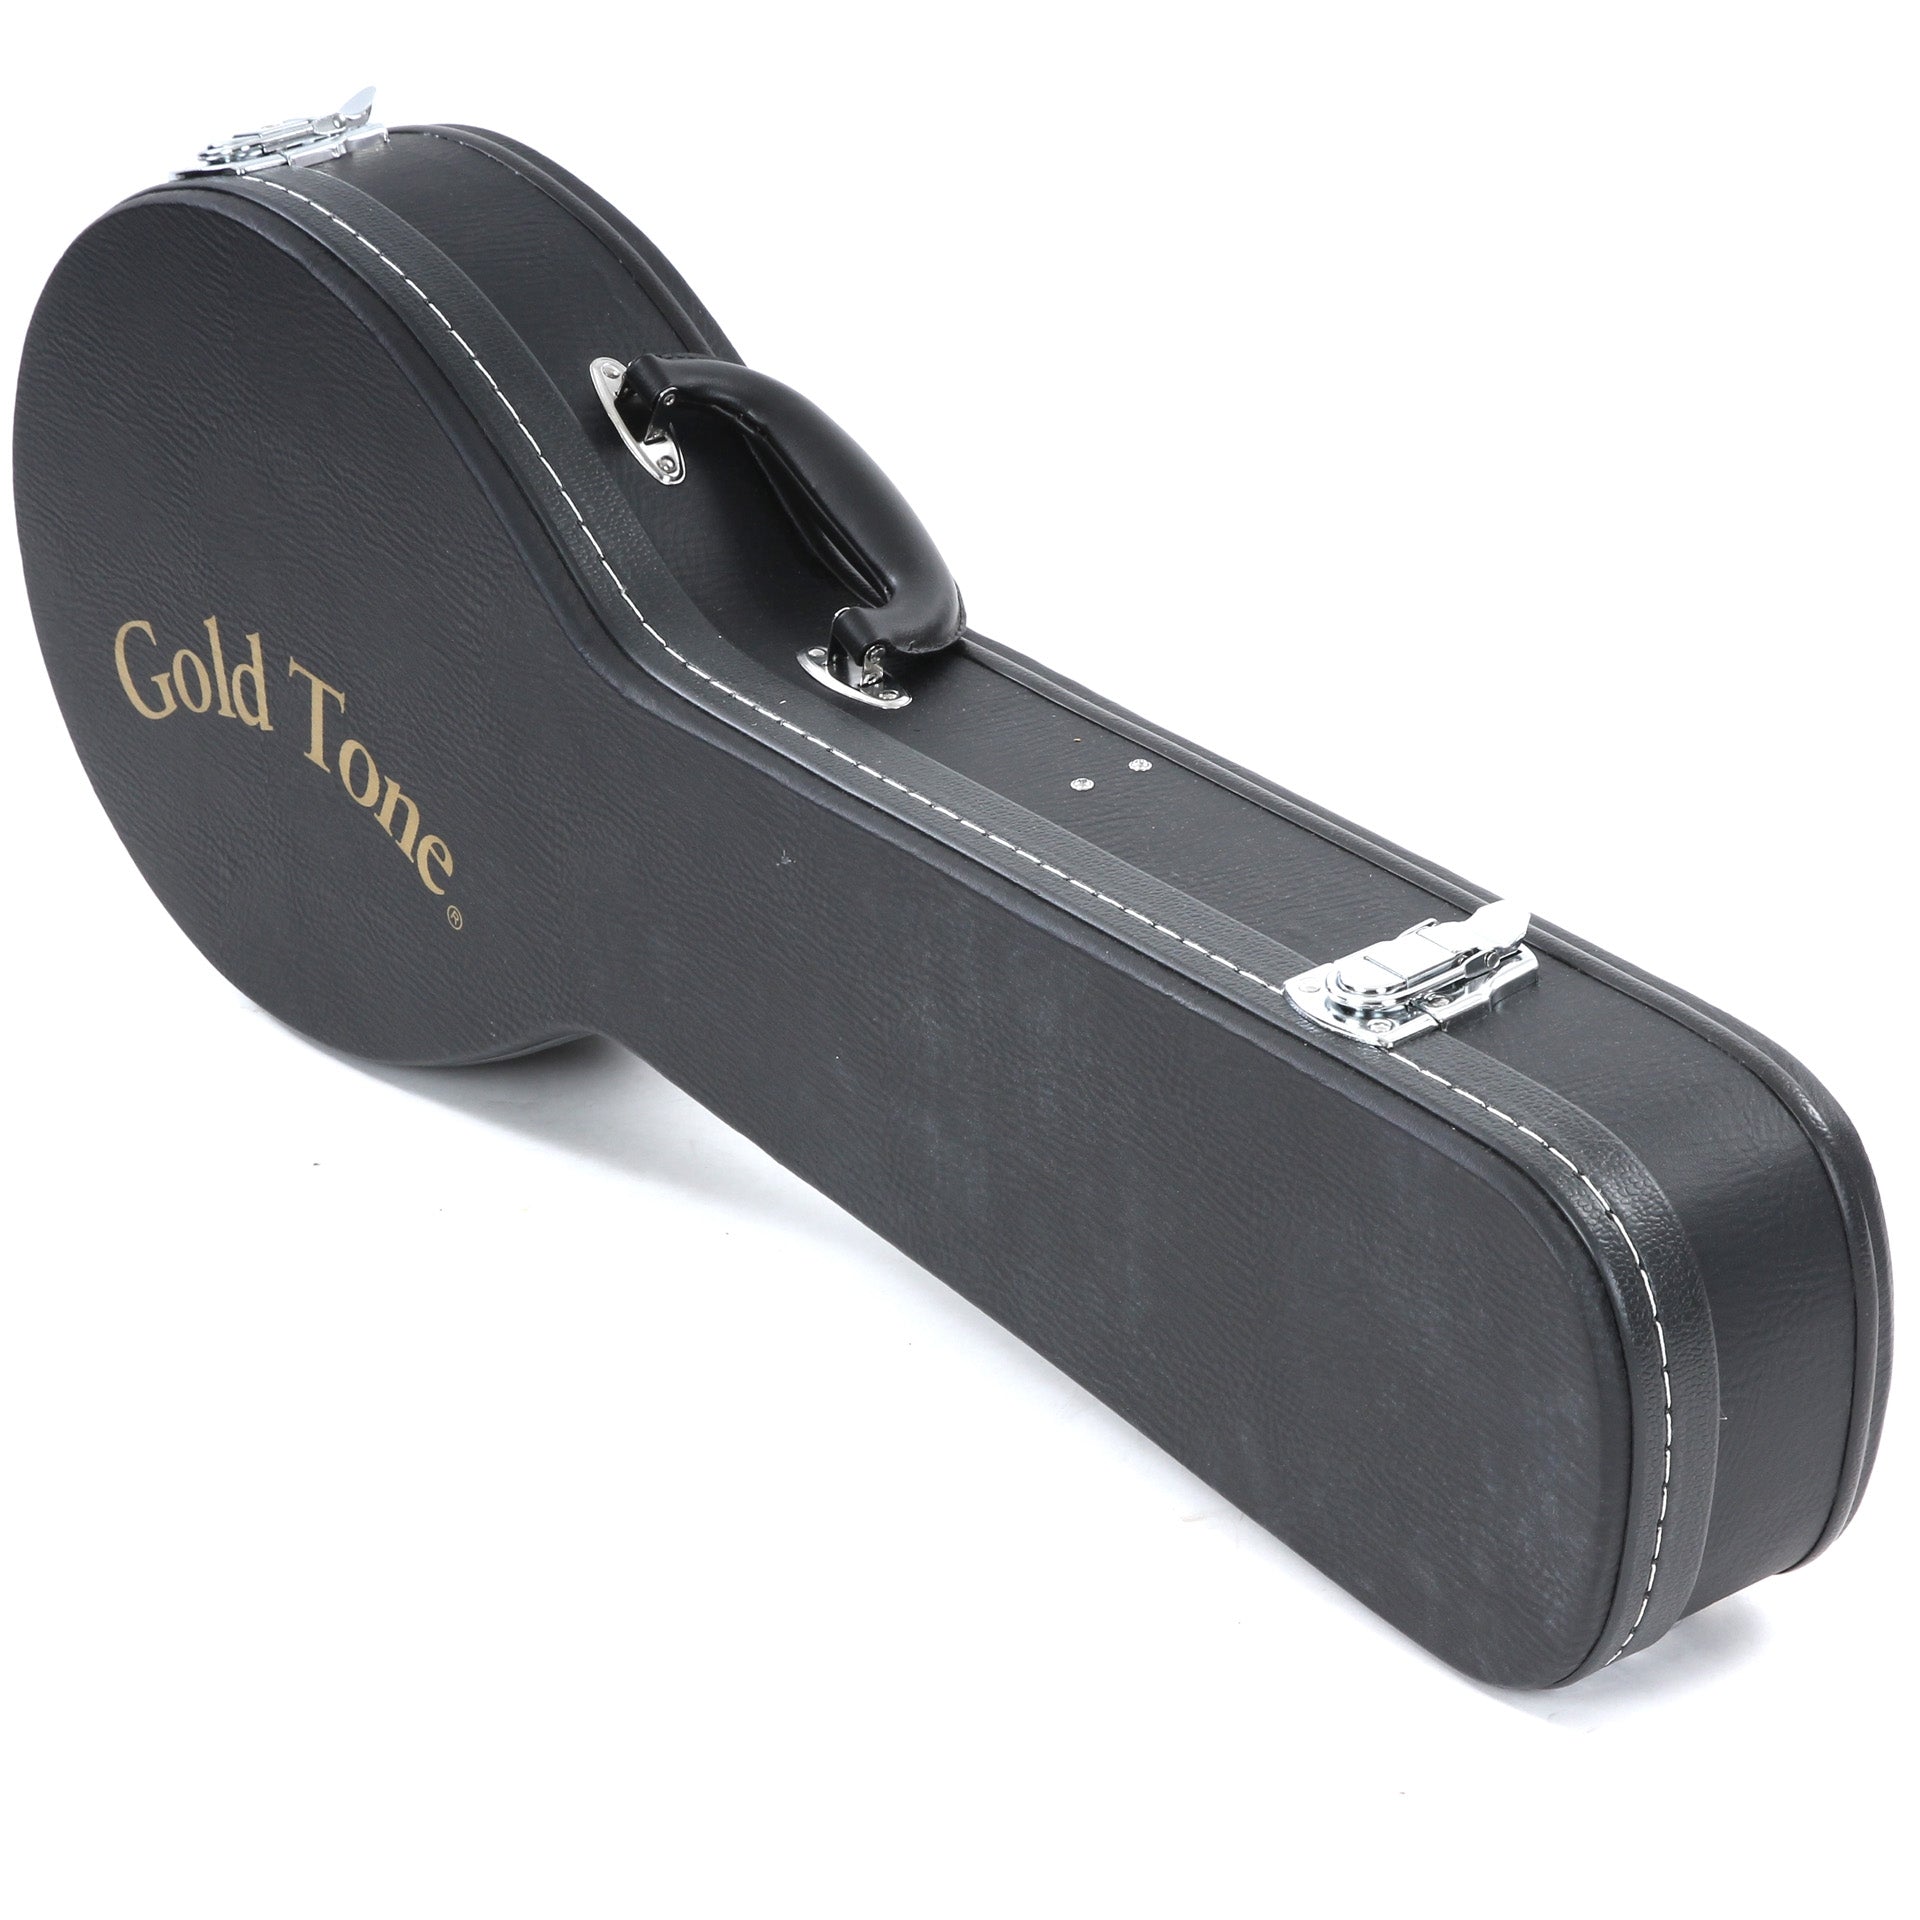 Image 11 of Gold Tone Baritone Banjo Ukulele & Case - SKU# GTBUB : Product Type Banjo Ukuleles : Elderly Instruments